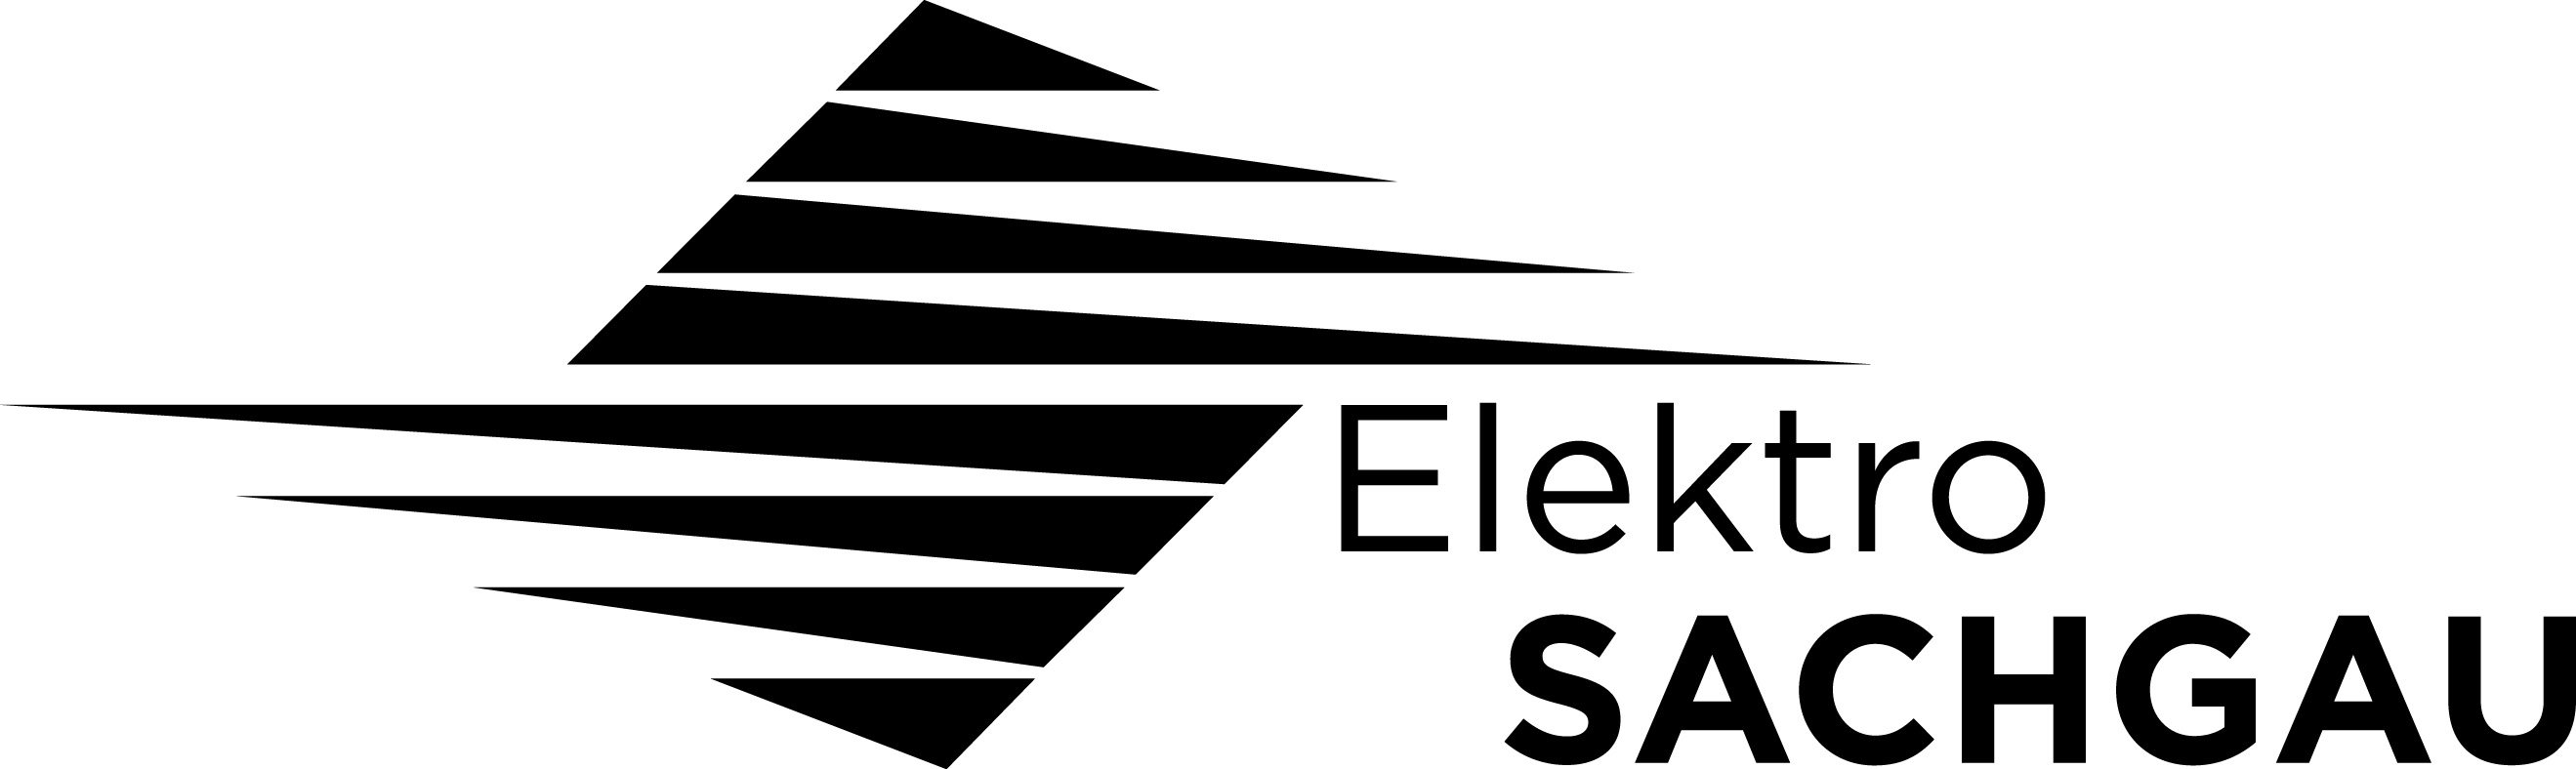 Elektro Sachgau GmbH